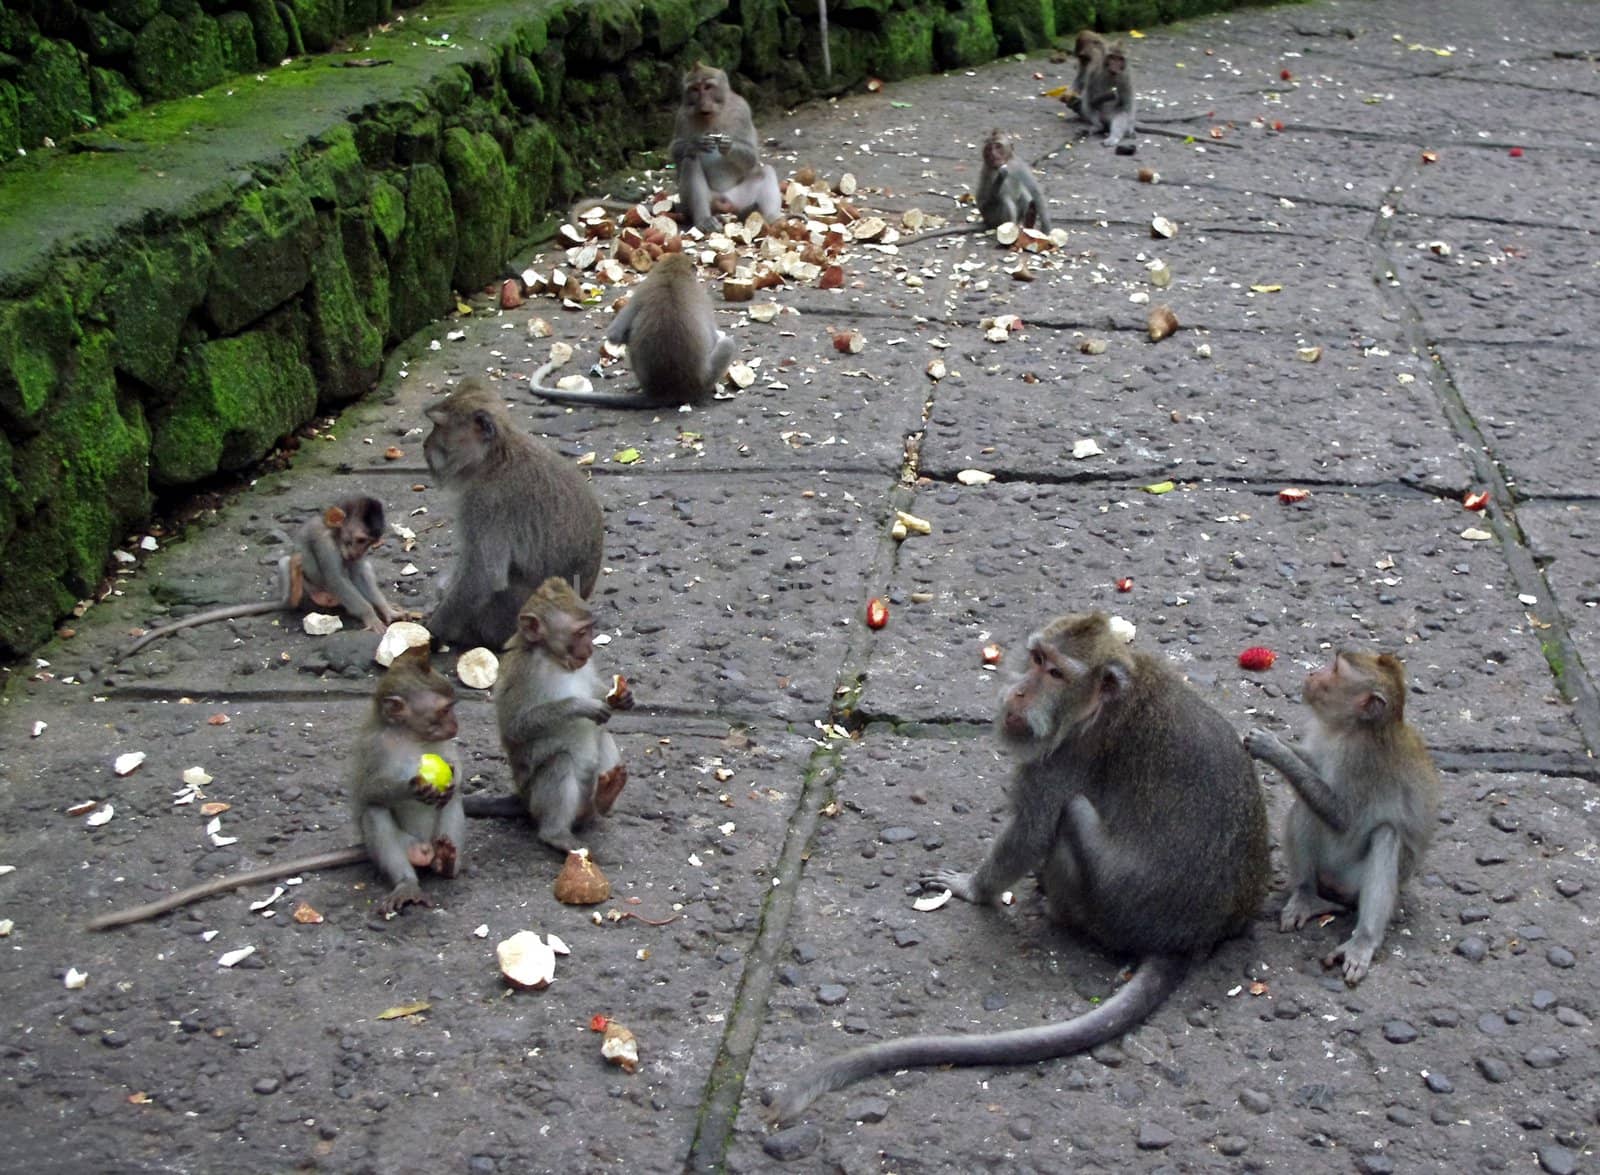 Monkeys eating together by Komar